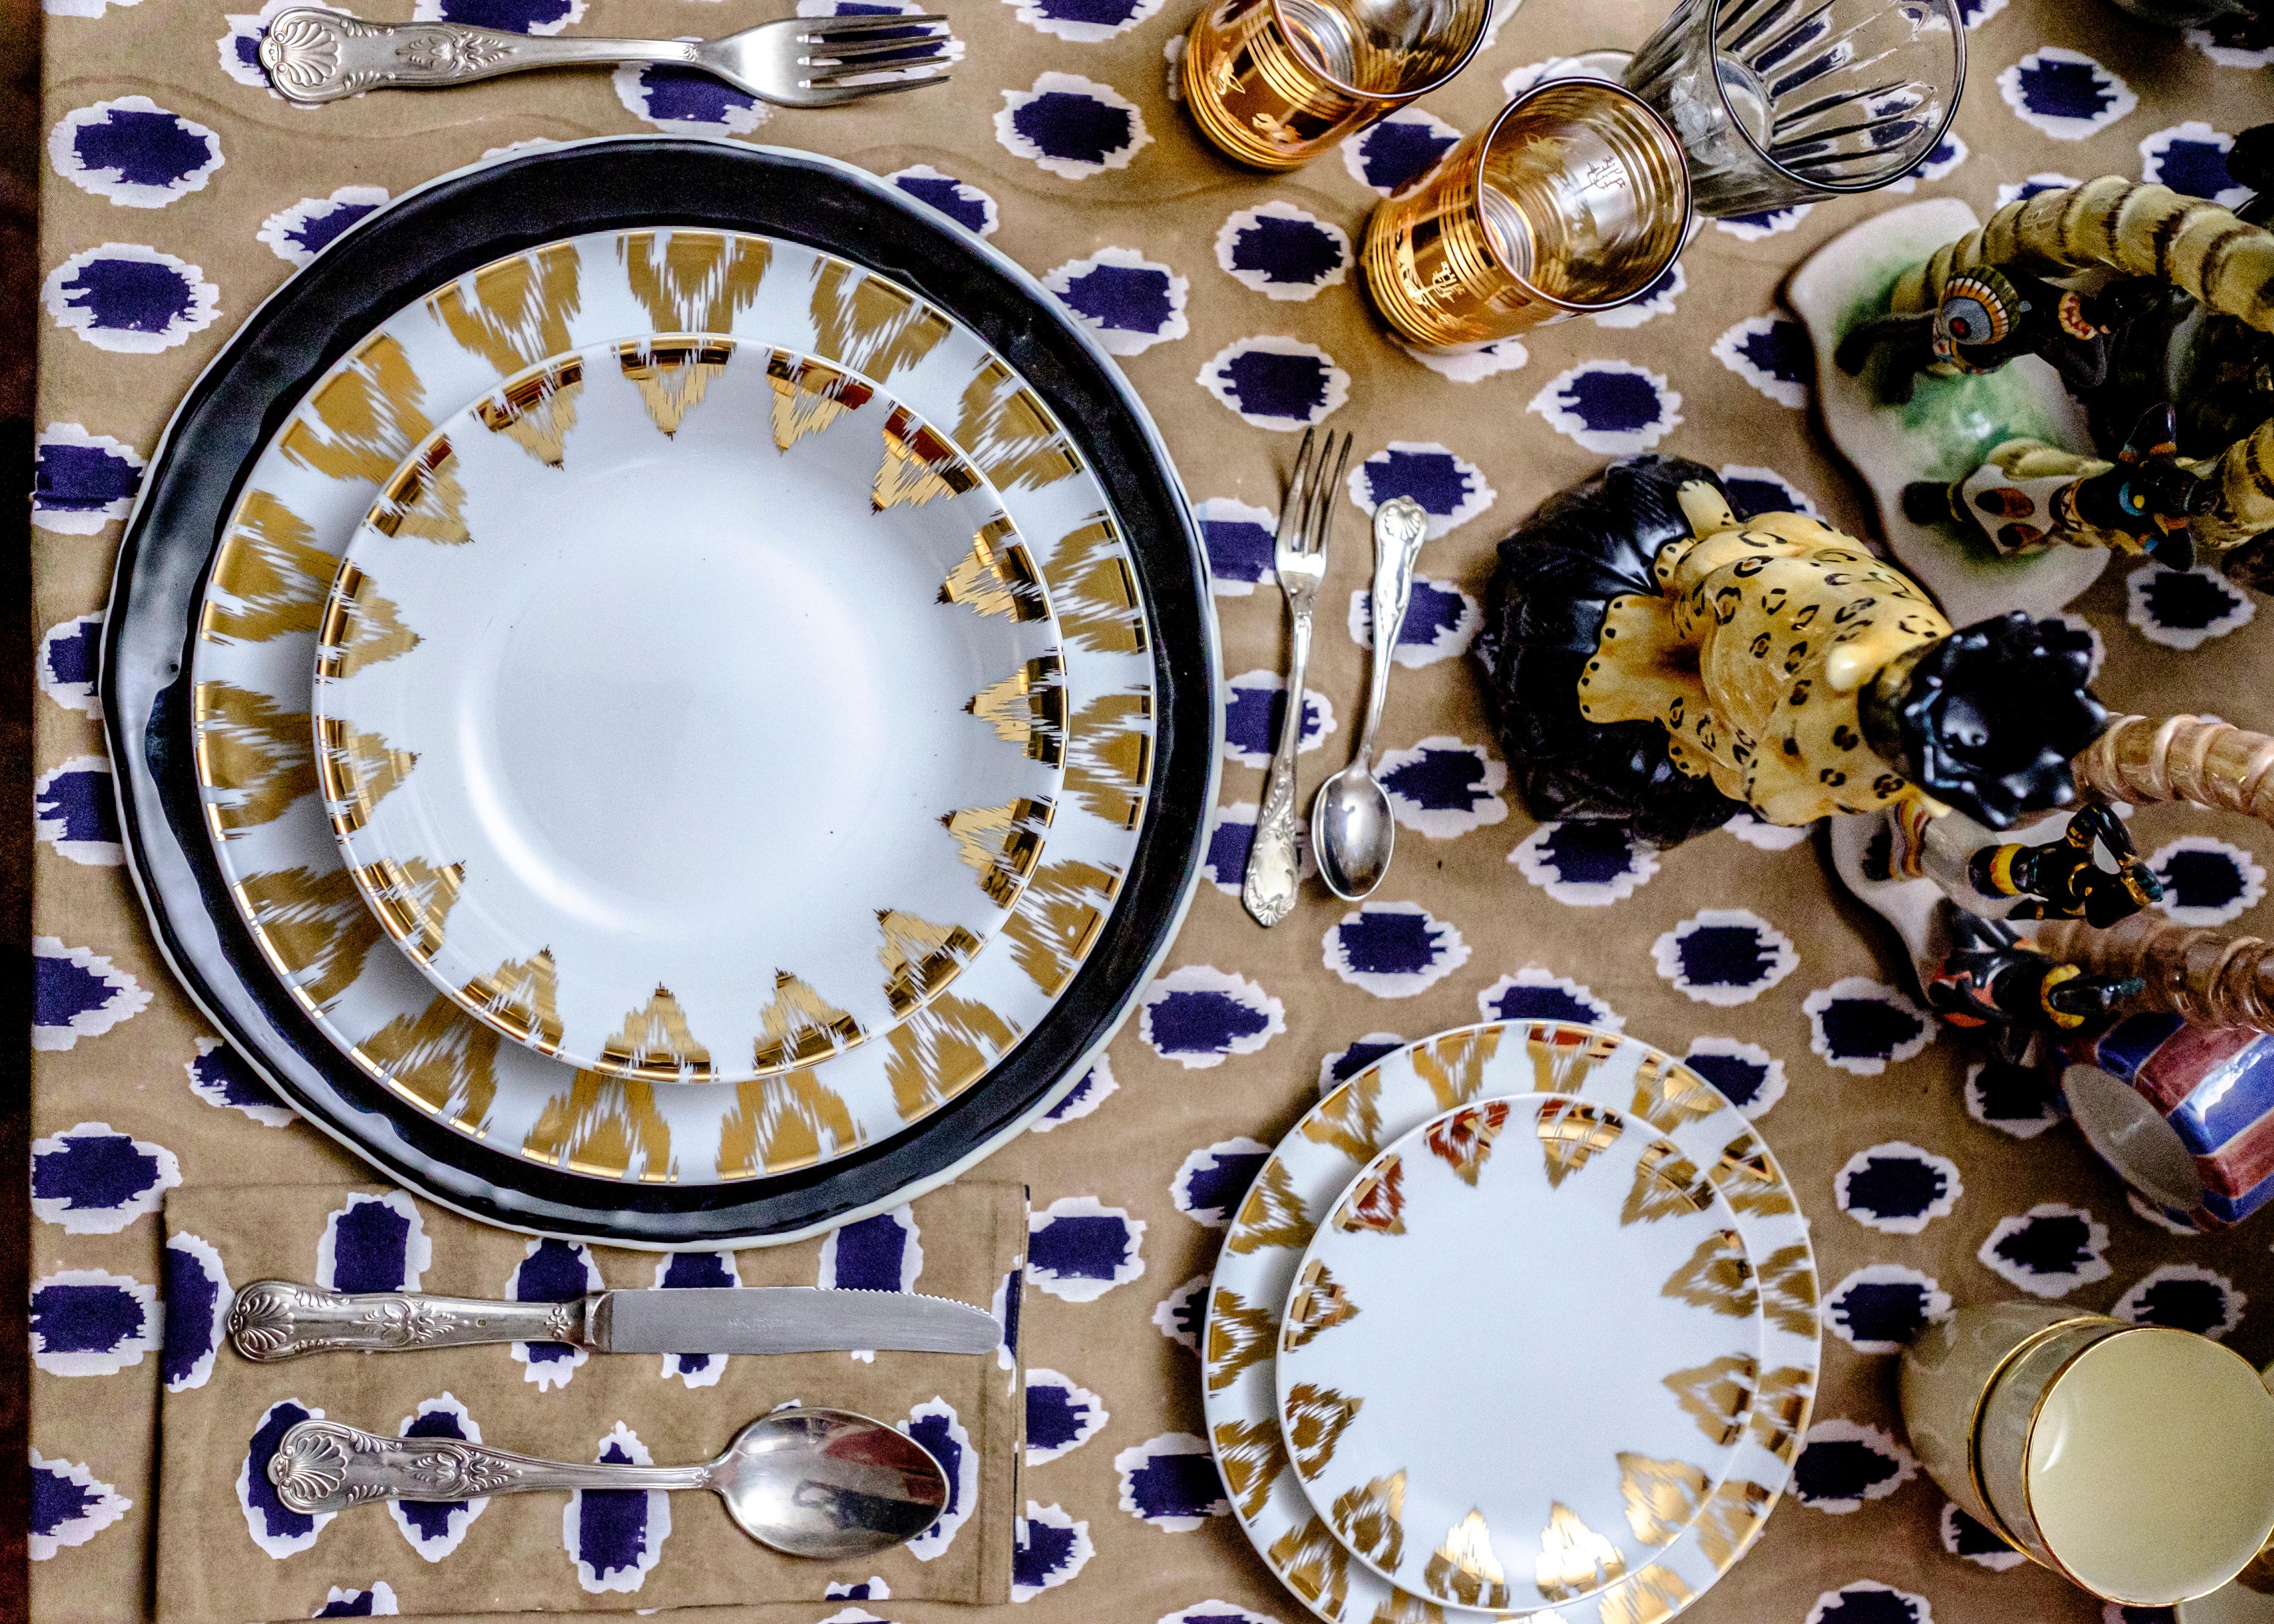 Inspirée du design ouzbek, cette assiette est une version revisitée de l'un des motifs Ikat classiques : le chevron.
L'or est intemporel et apportera le chic d'un design agelsee sur vos tables.
Porcelaine.